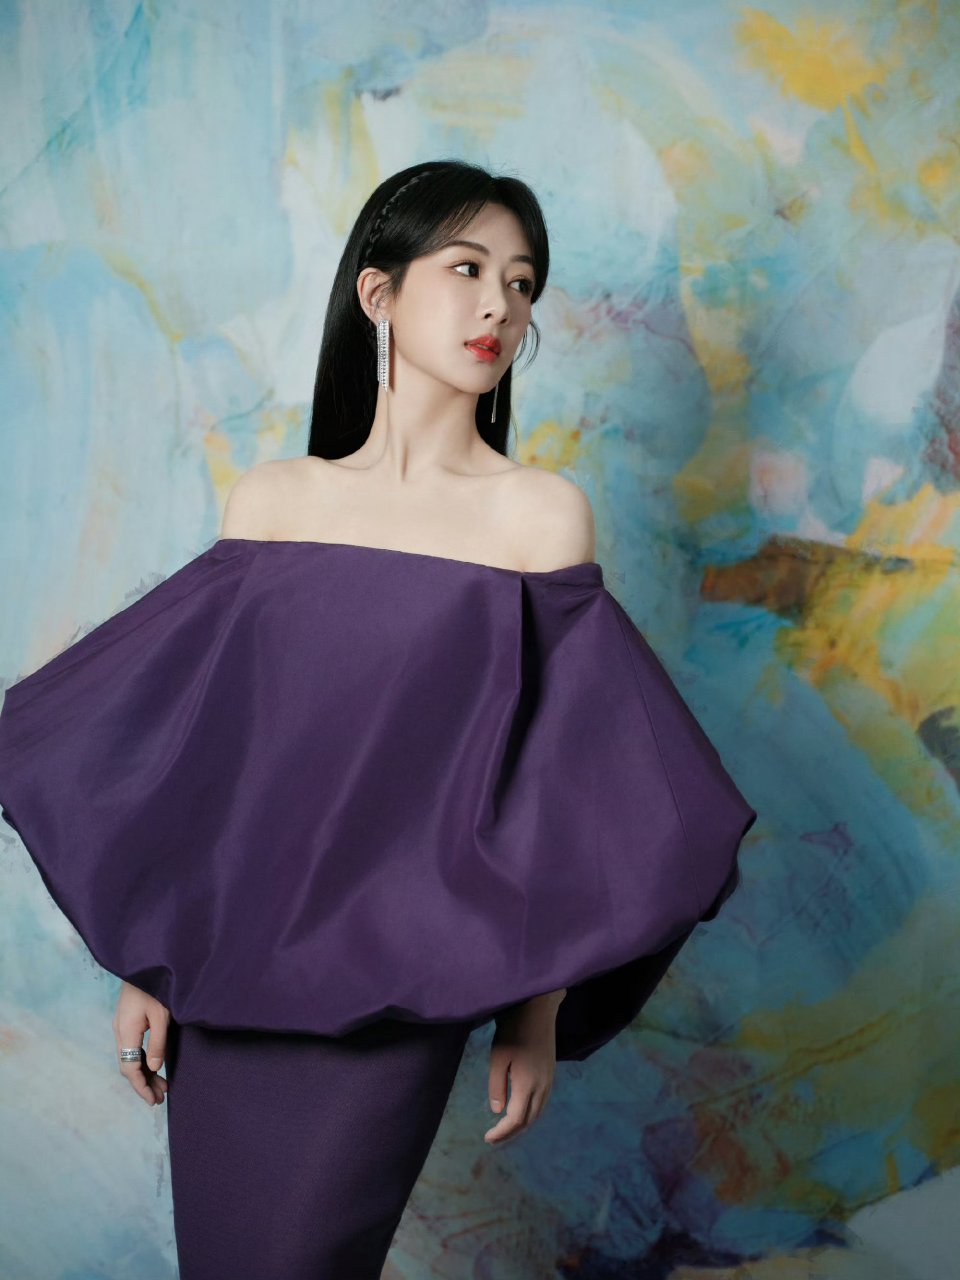 杨紫一袭紫色抹胸连衣裙,优雅高贵好迷人